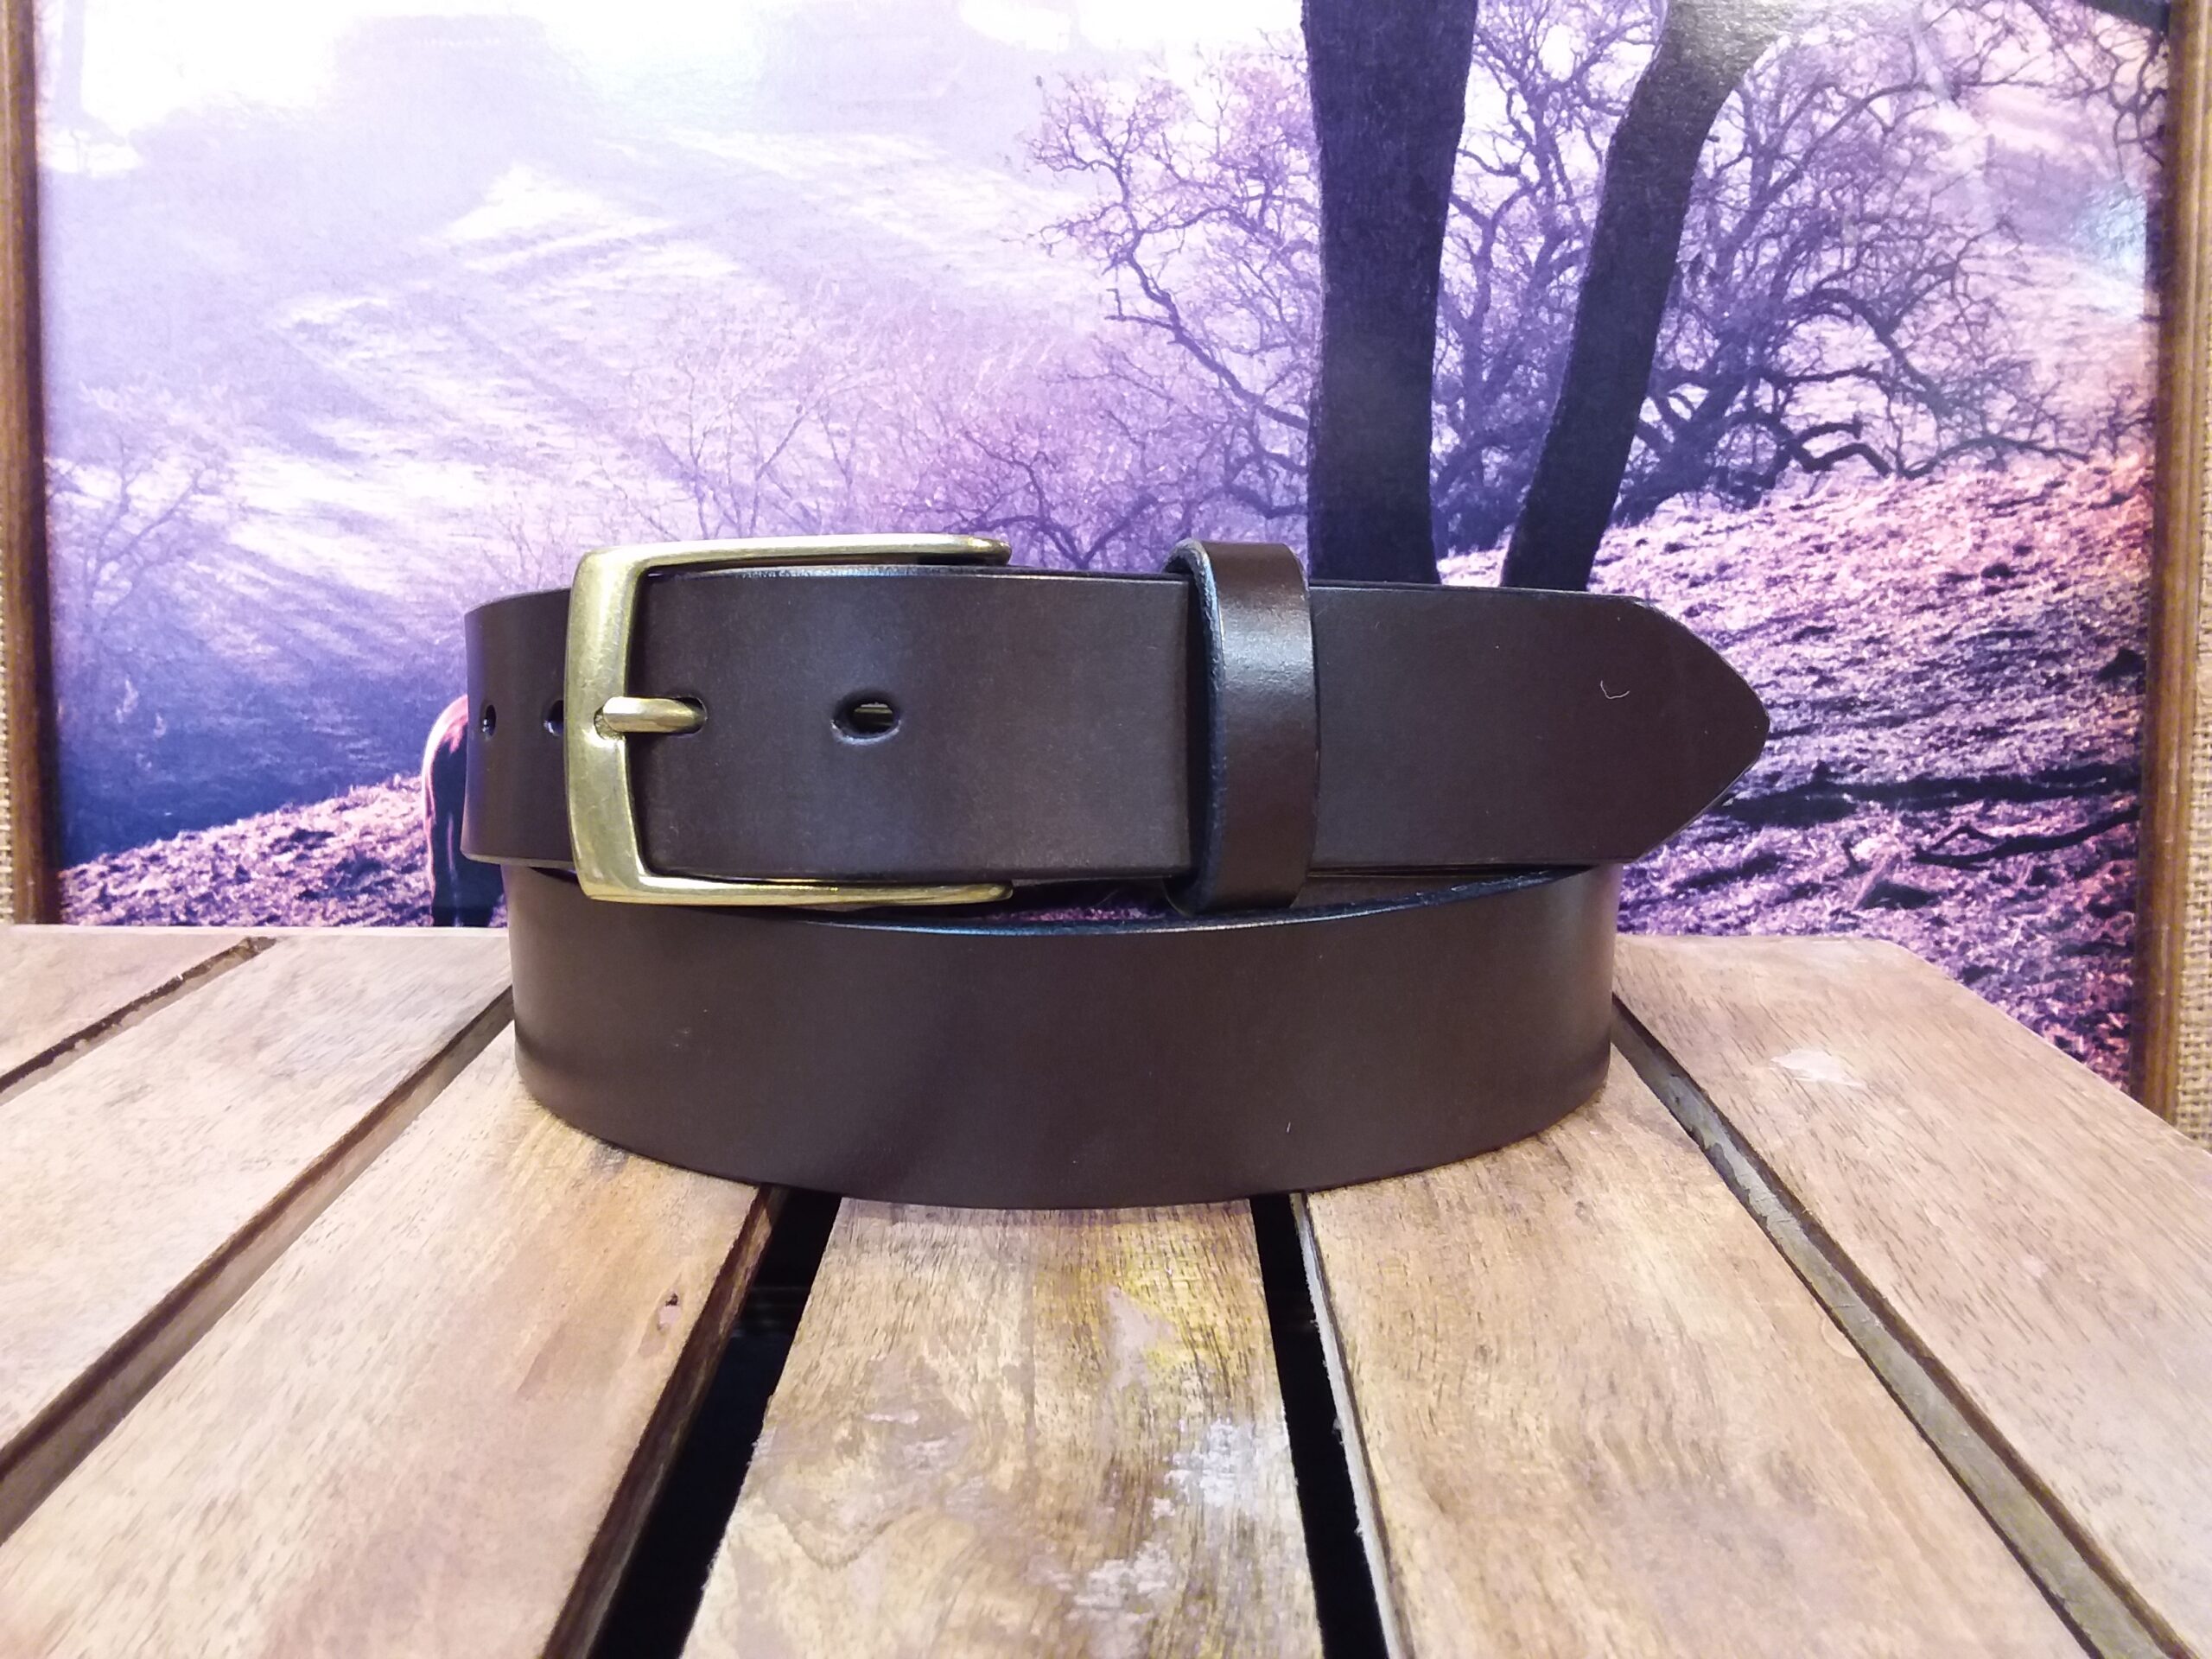 Arcus ~ Black English Bridle Leather Belt